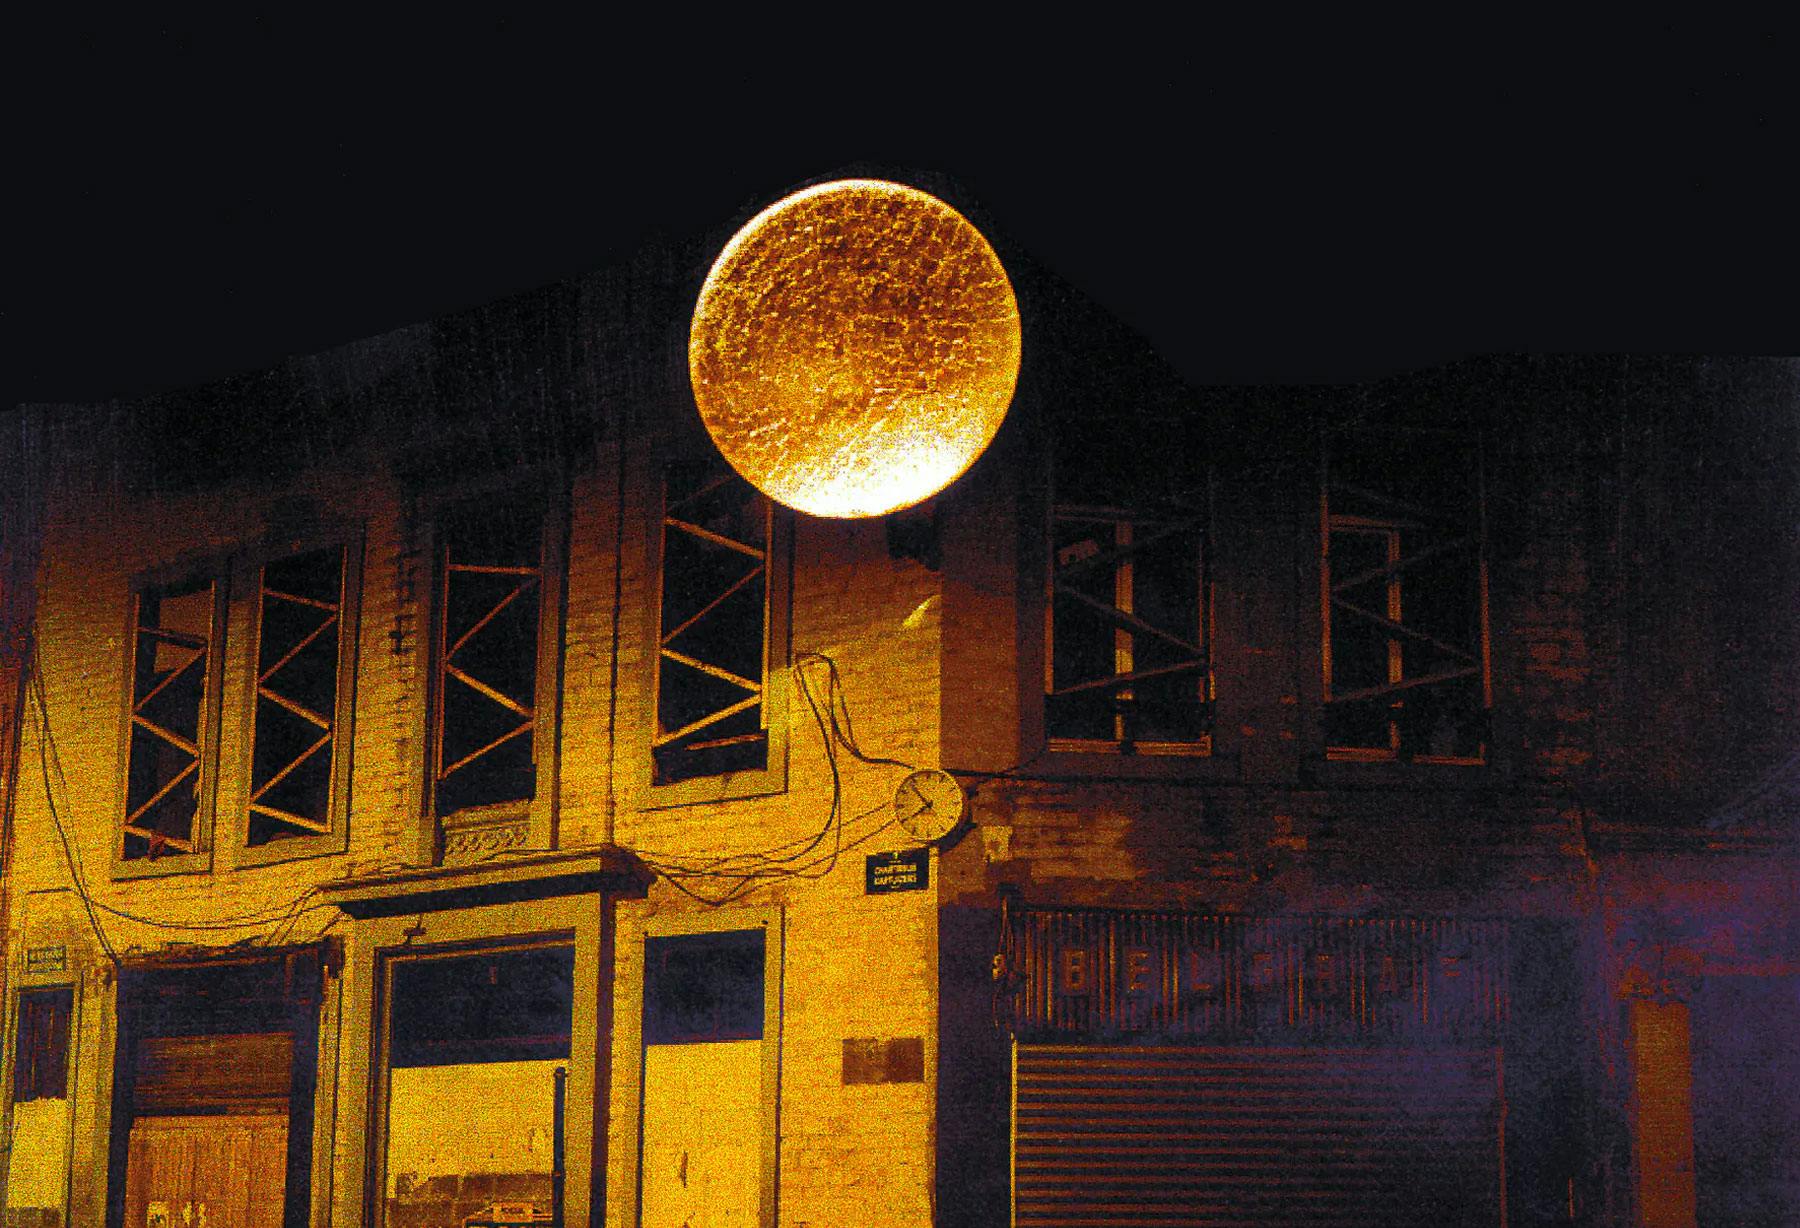 <p>В Брюсселе, на Рю-де-Шартрё был установлен первый светильник «Luna Piena» диаметром 2,5 м, покрытый золотой фольгой. И снова в Брюсселе была установлена оптоволоконная модификация «Albero della Luce» высотой 5 м с 50 световыми ветвями.</p>
